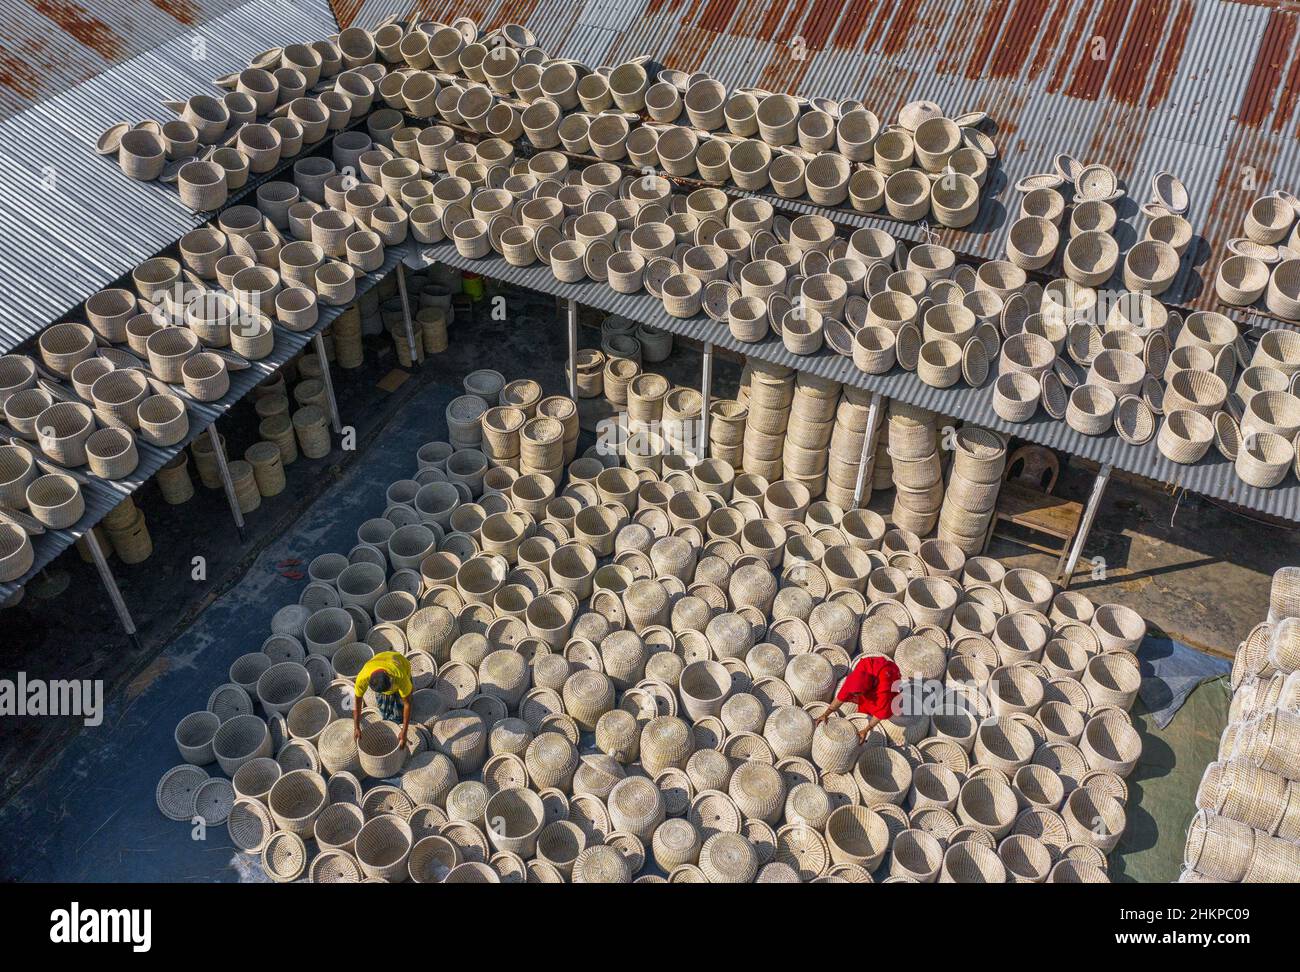 Tausende von frisch handgewebten Körben trocknen in der Sonne, bevor sie in die ganze Welt exportiert werden. Stockfoto